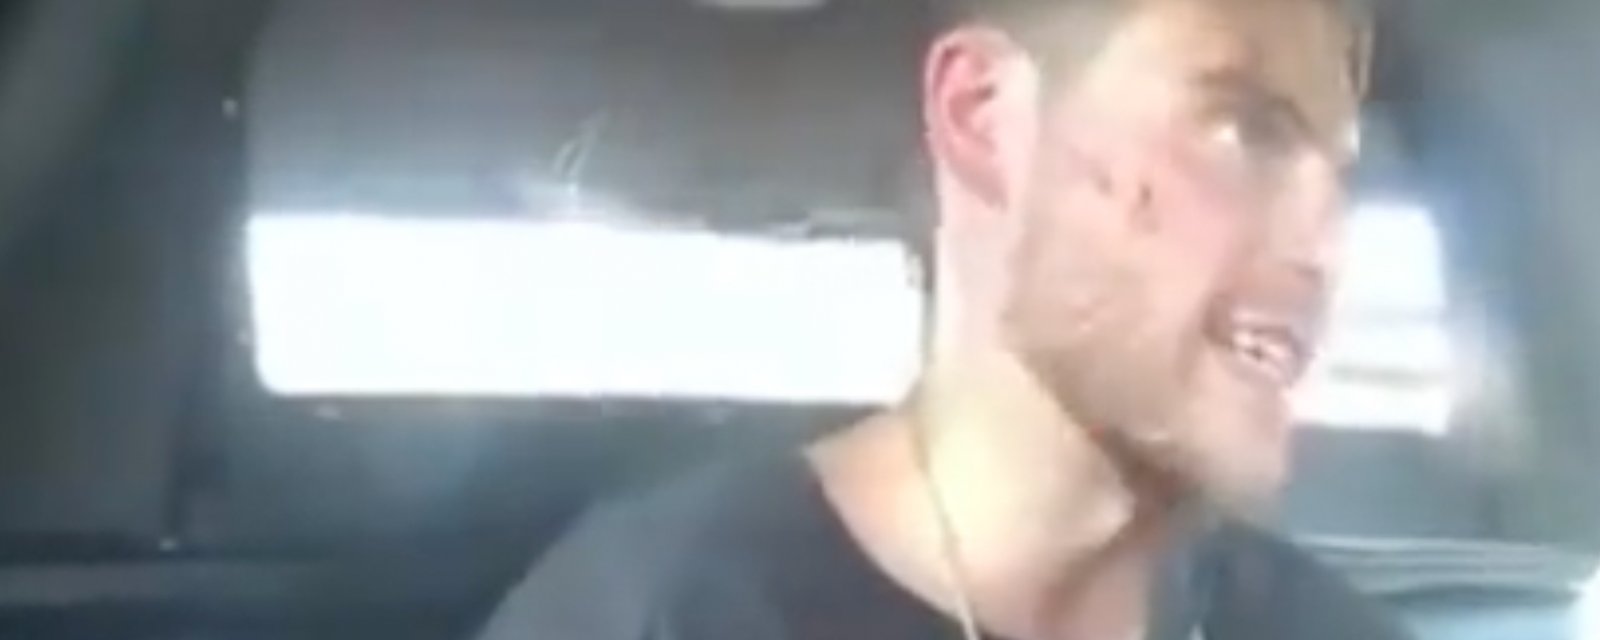 Disturbing new footage of Alex Galchenyuk’s arrest leaked!